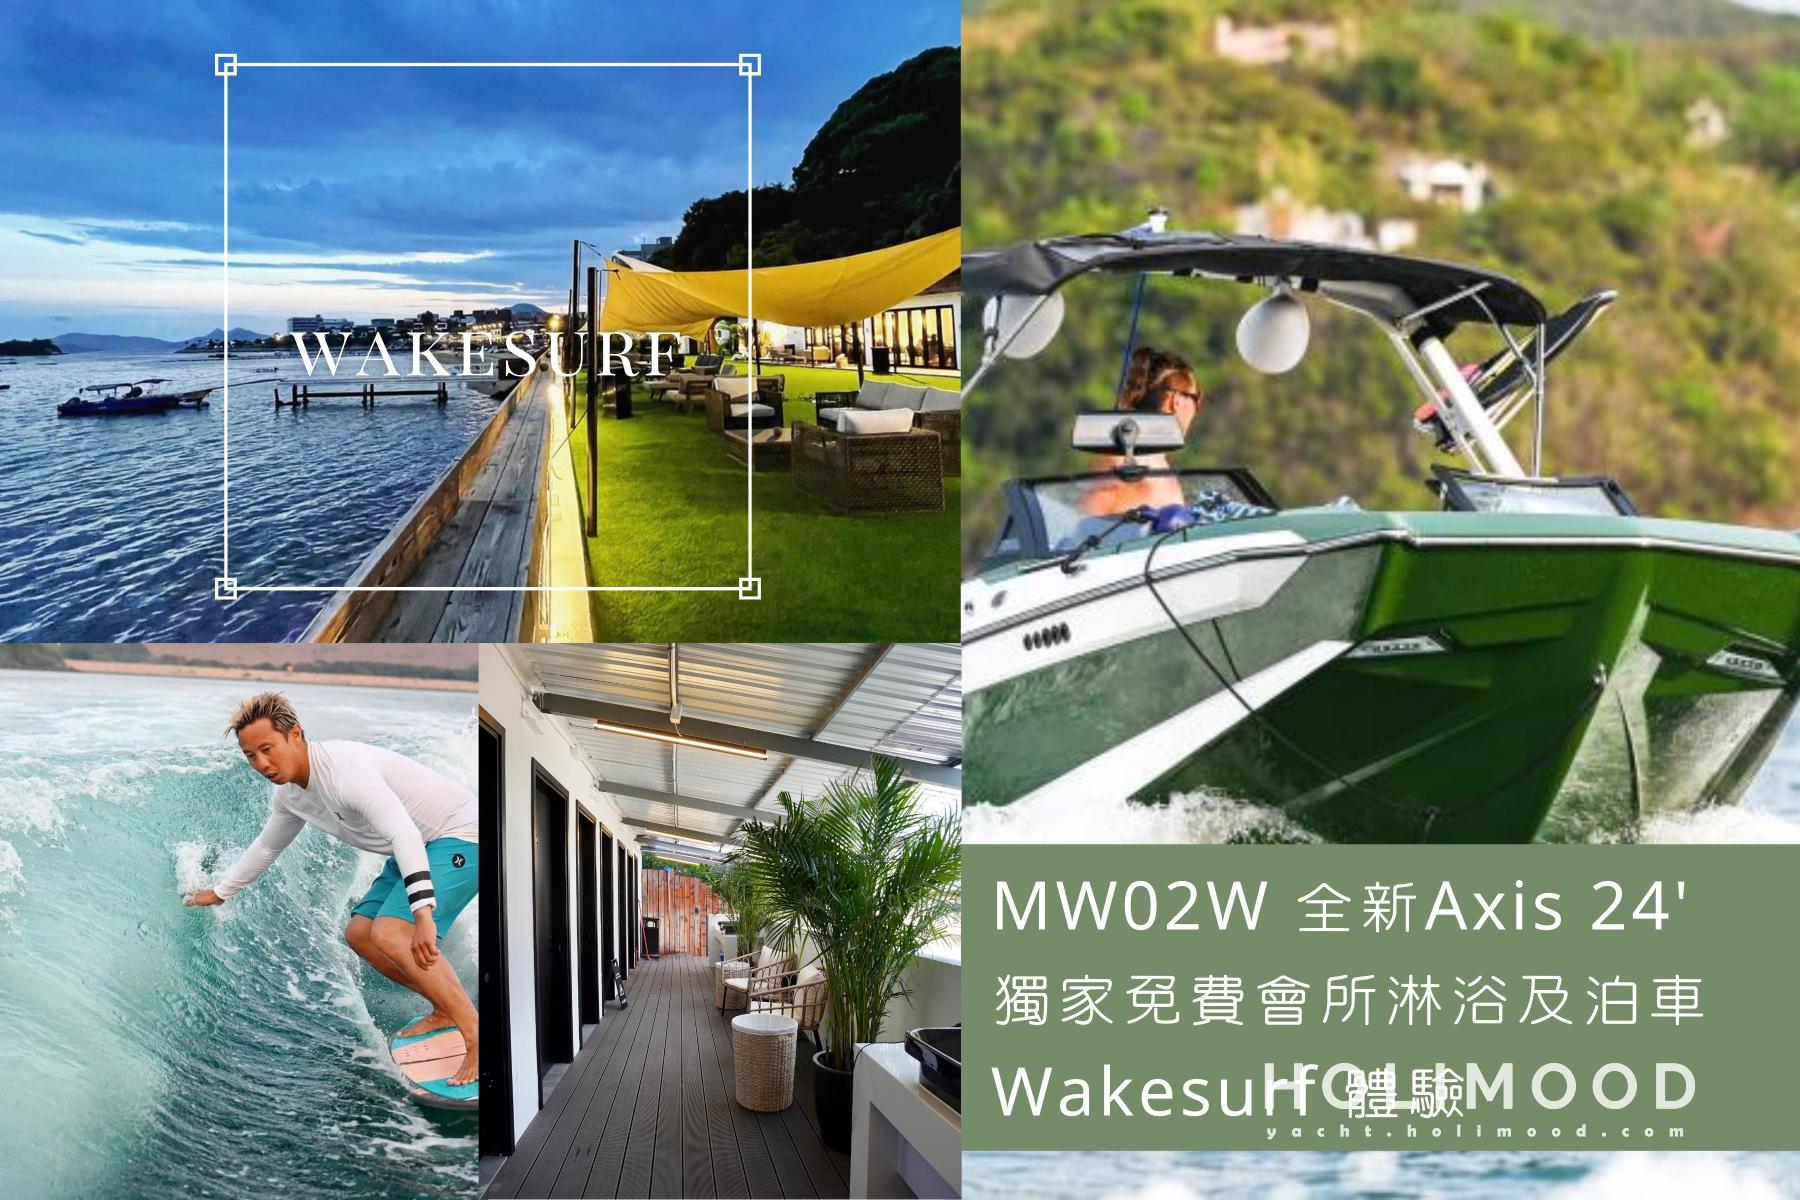 MW02 Sai Kung Wakesurf 1